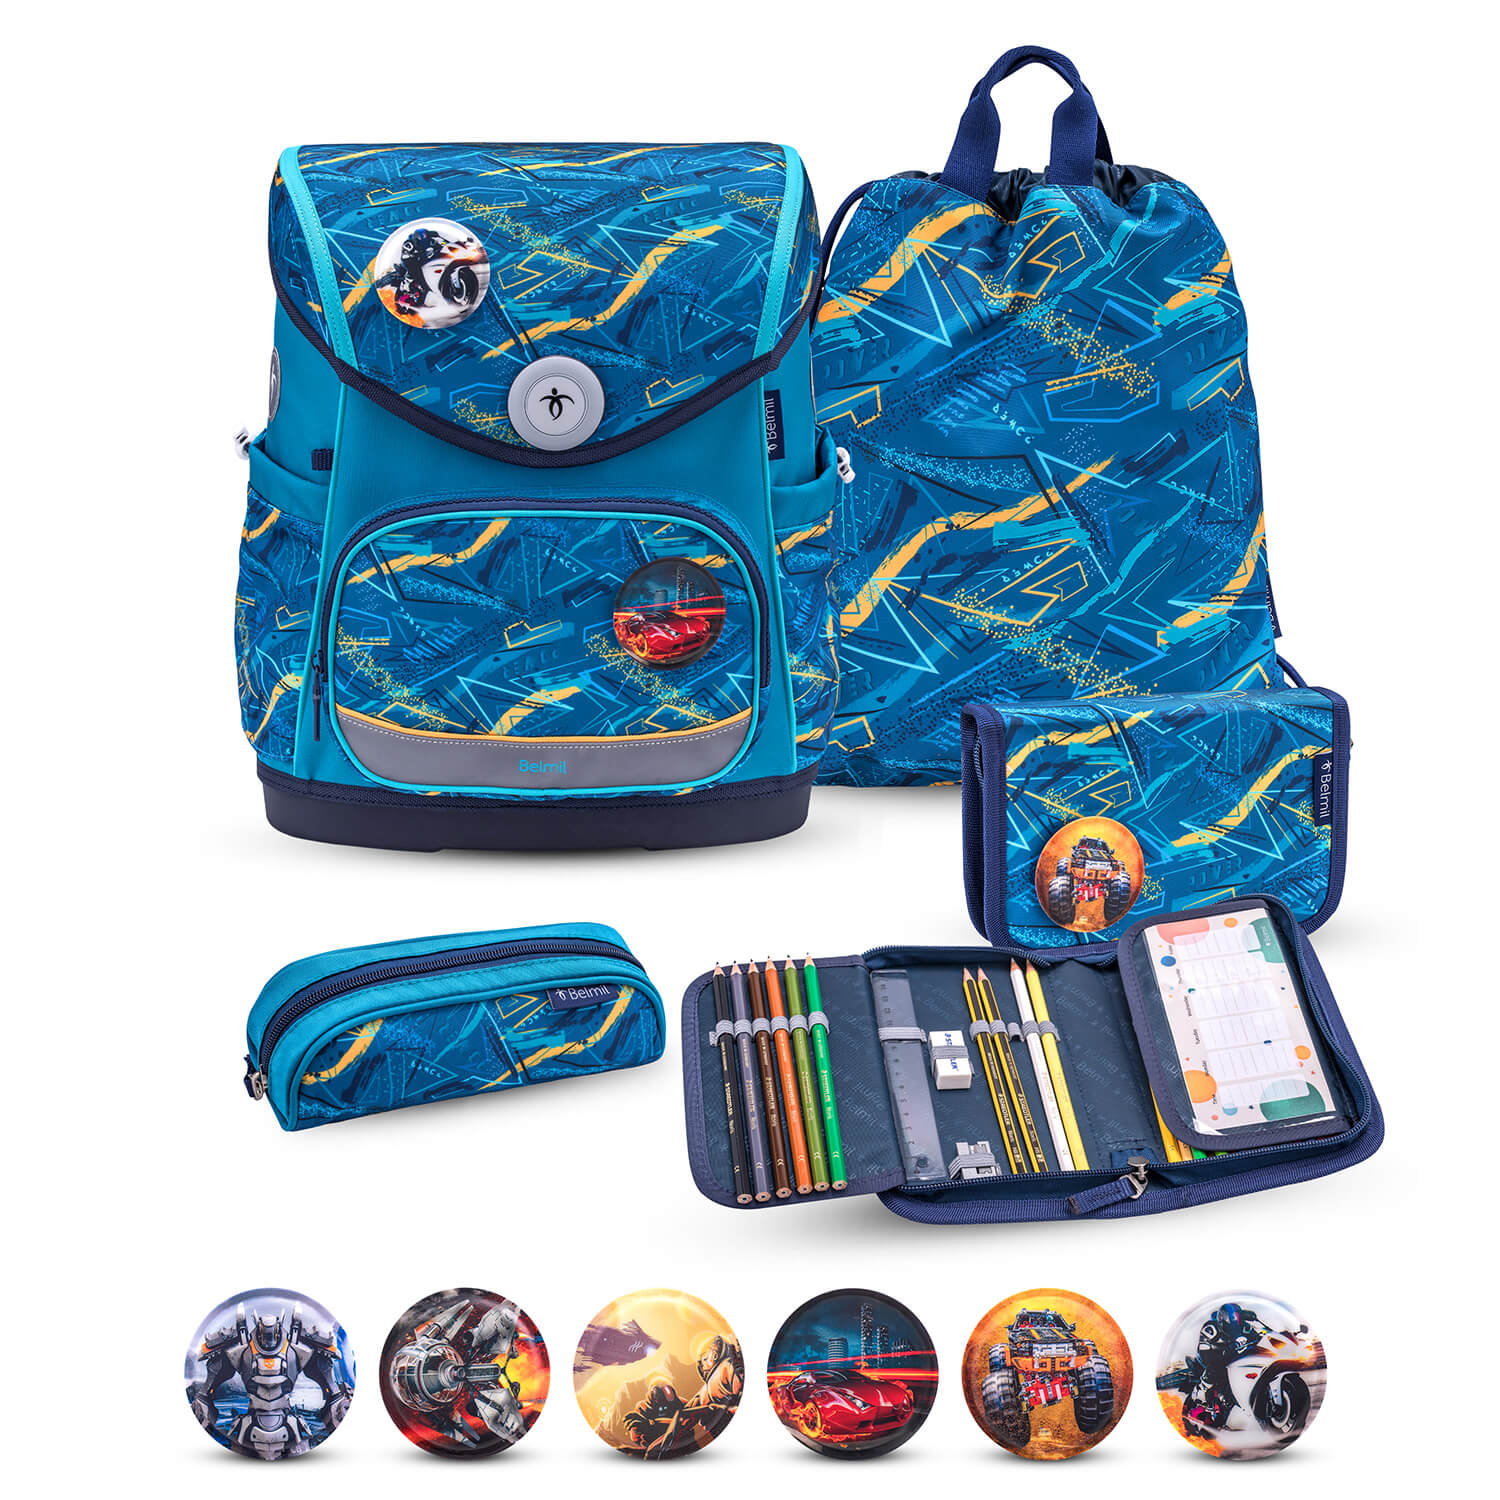 Premium Compact Plus Baltic Schoolbag set 5pcs.